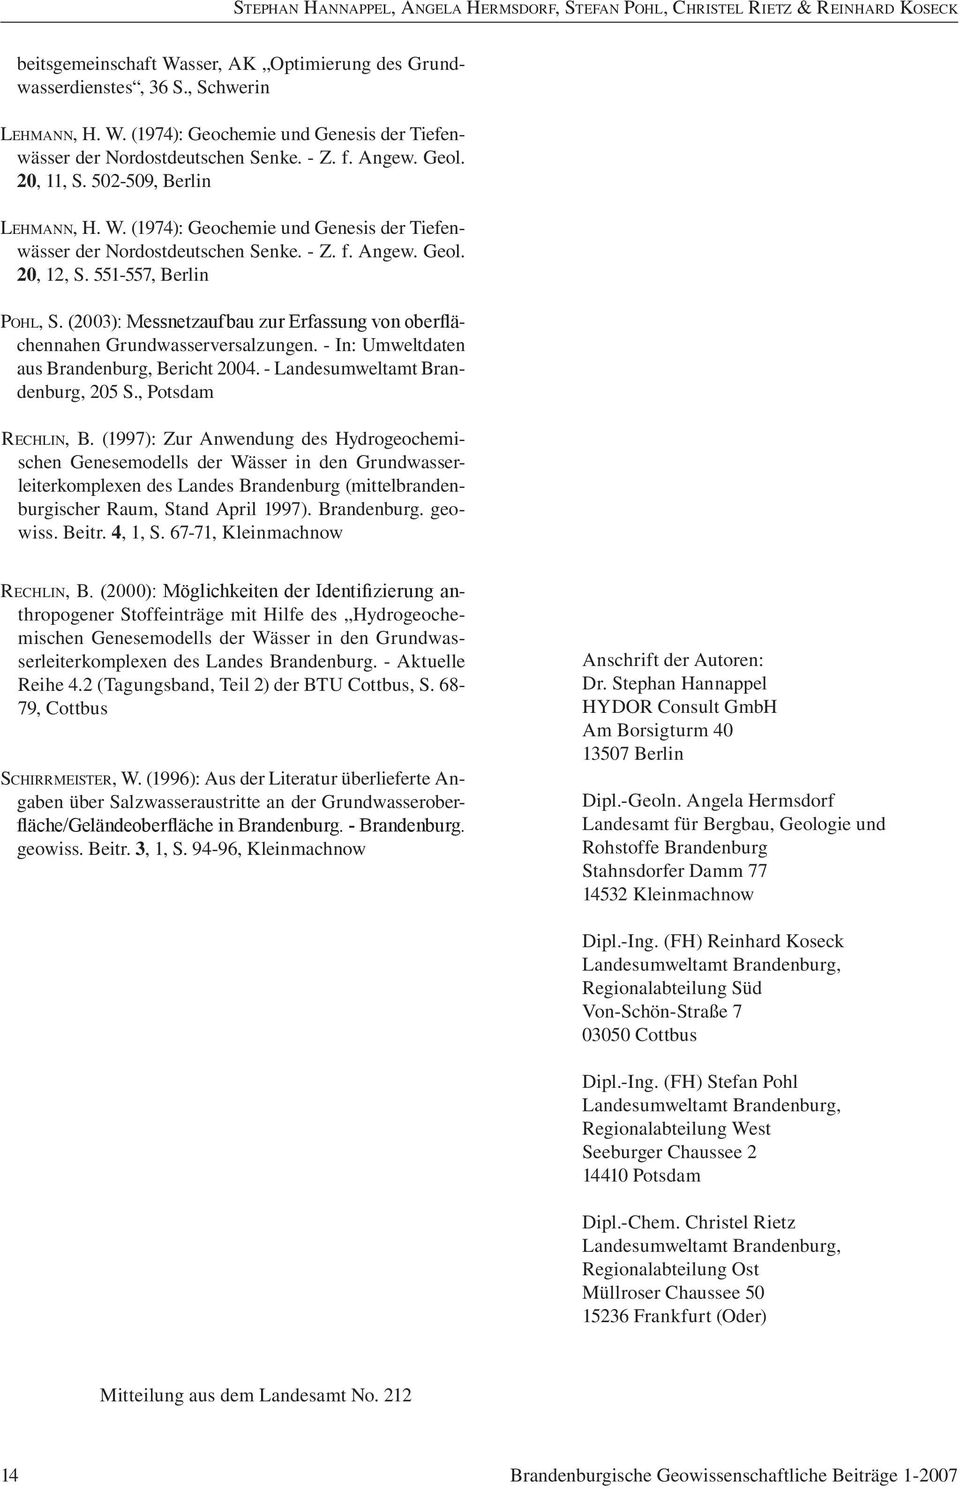 (2003): Messnetzaufbau zur Erfassung von oberflächennahen Grundwasserversalzungen. - In: Umweltdaten aus Brandenburg, Bericht 2004. - Landesumweltamt Brandenburg, 205 S., Potsdam Rechlin, B.